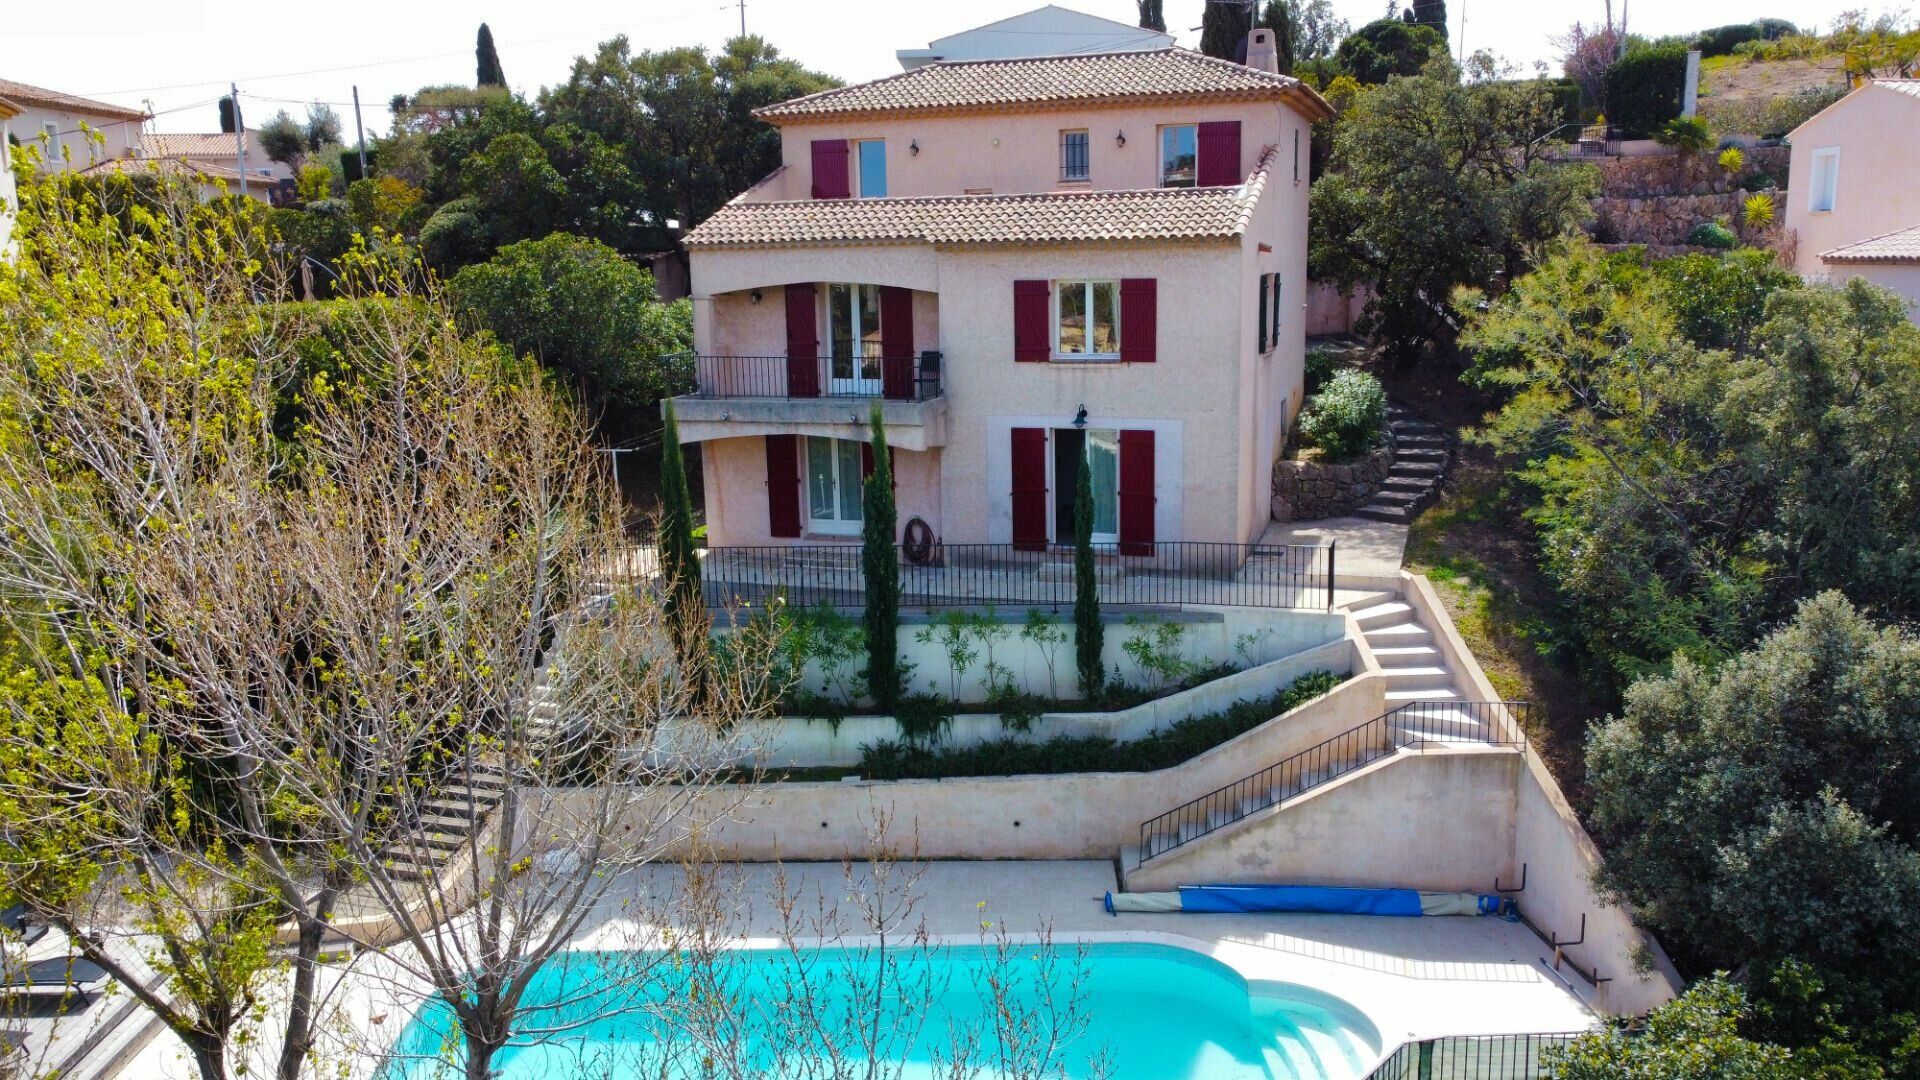 Maison à vendre 7 185m2 à Les Issambres - Roquebrune-sur-Argens vignette-1